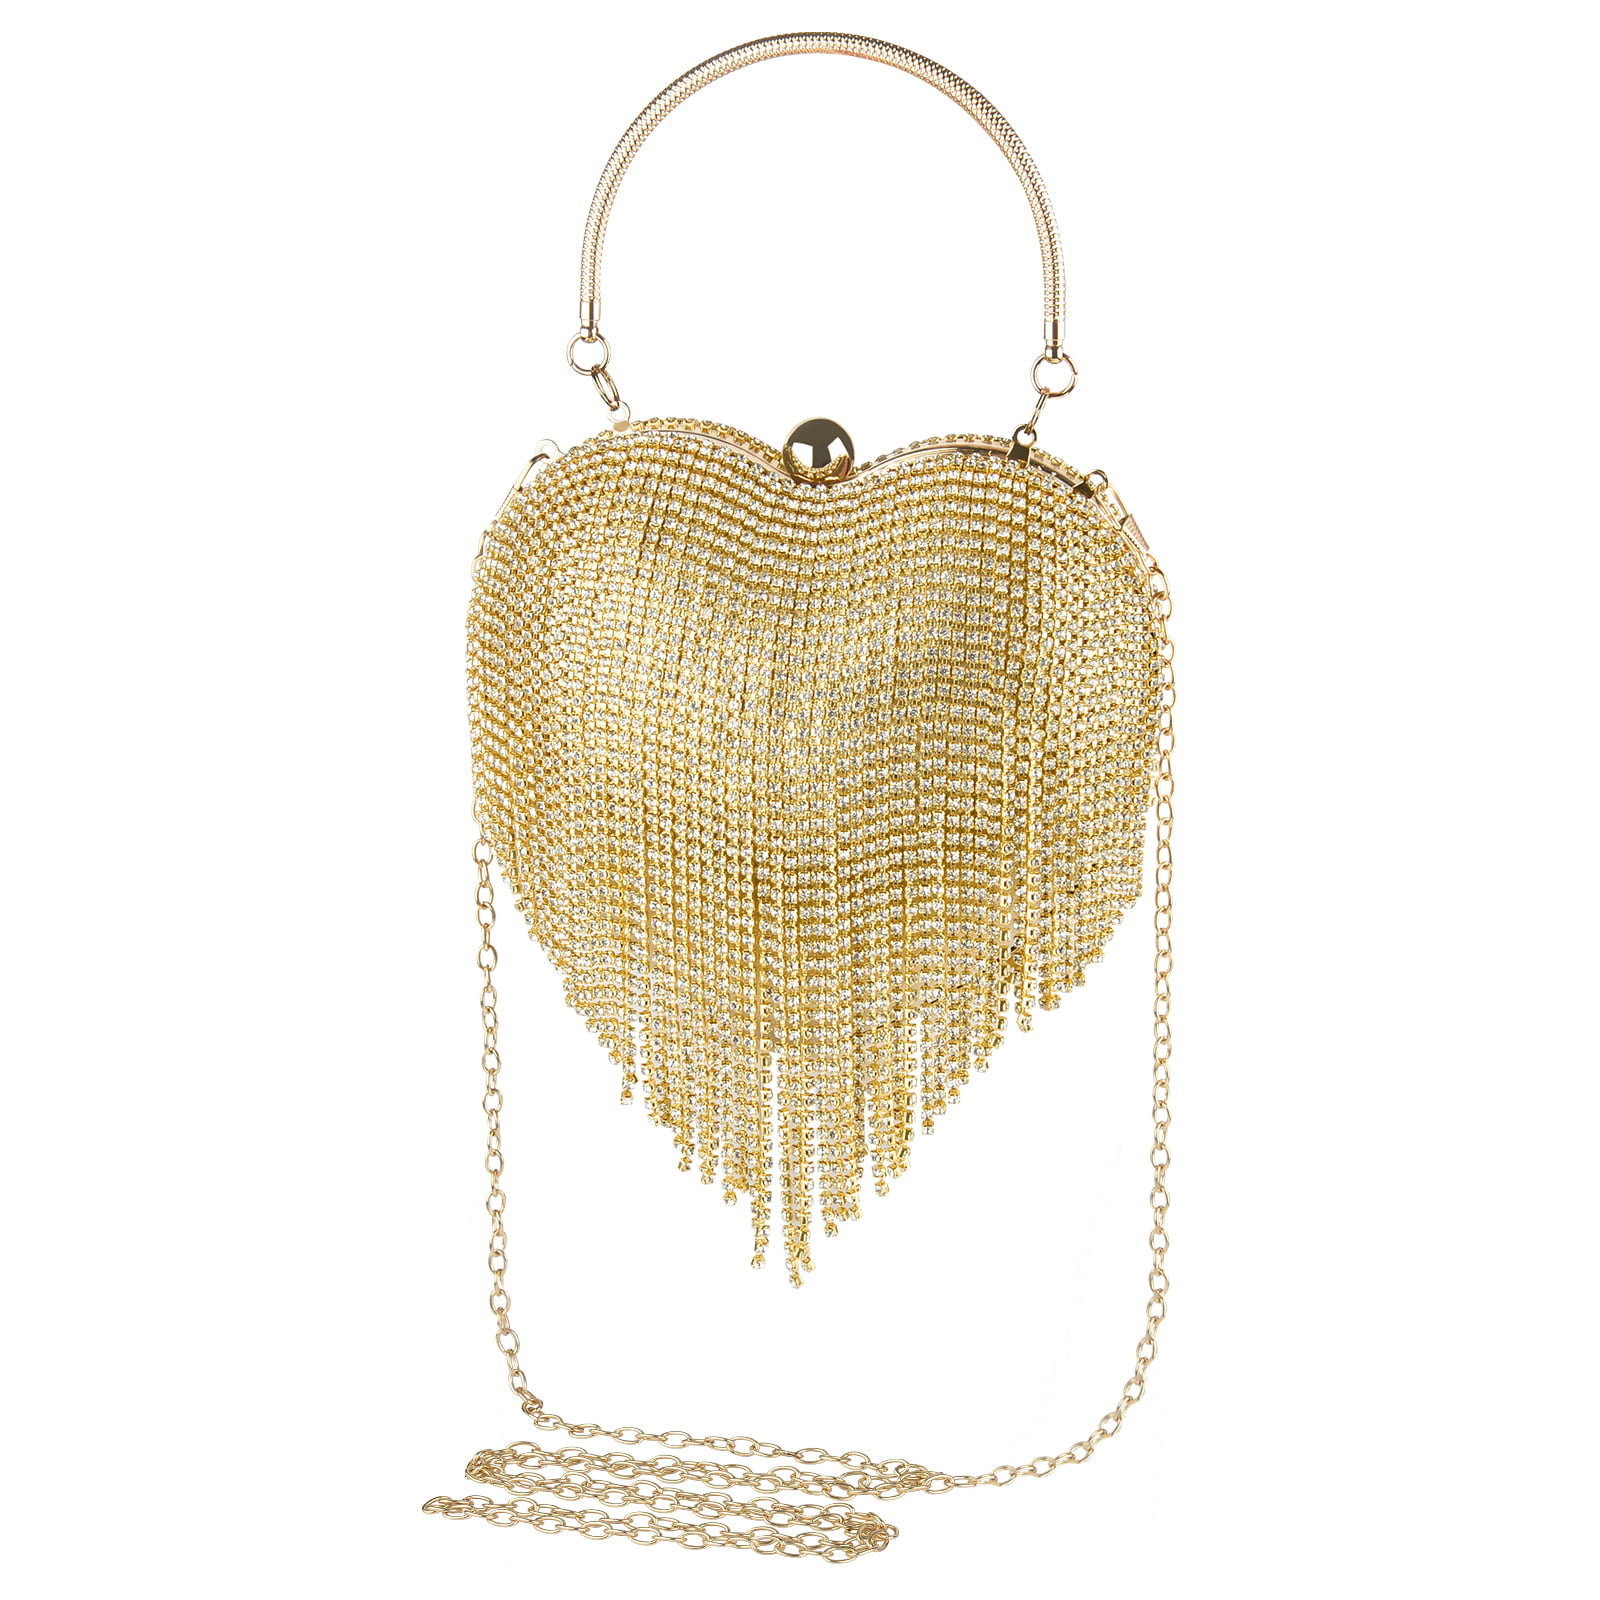 New Fashion Love Heart Rhinestone Clutch Crystal Evening Bag Women Party Handbag